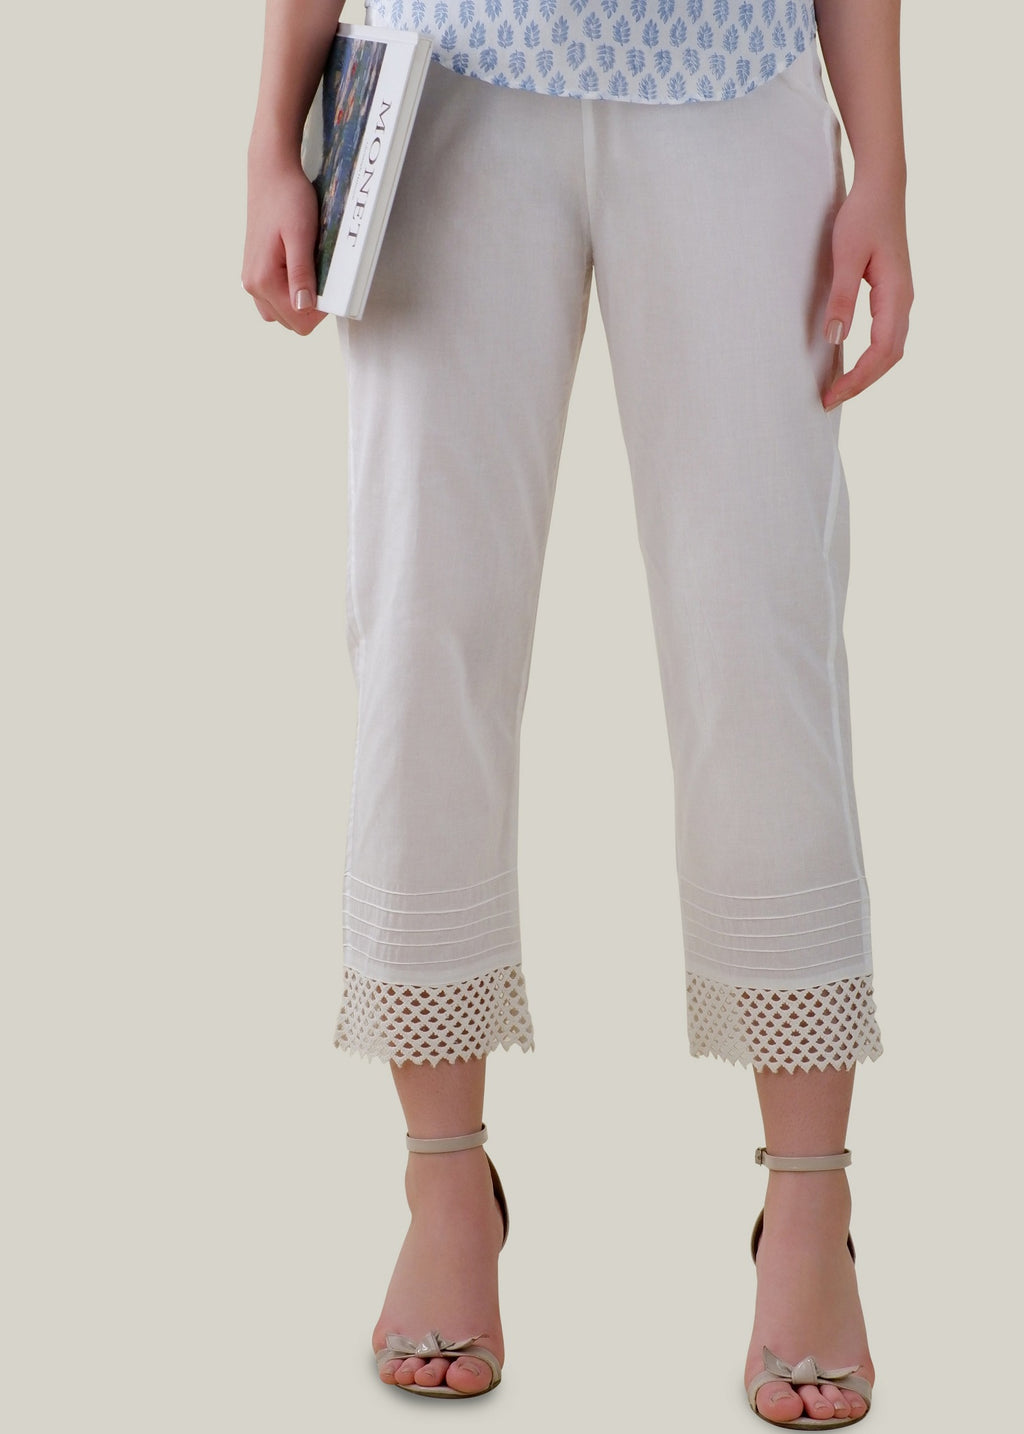 Buy White Regular Cotton Prithvi Pant Online - Rajasthan - Jaipur ID1557031